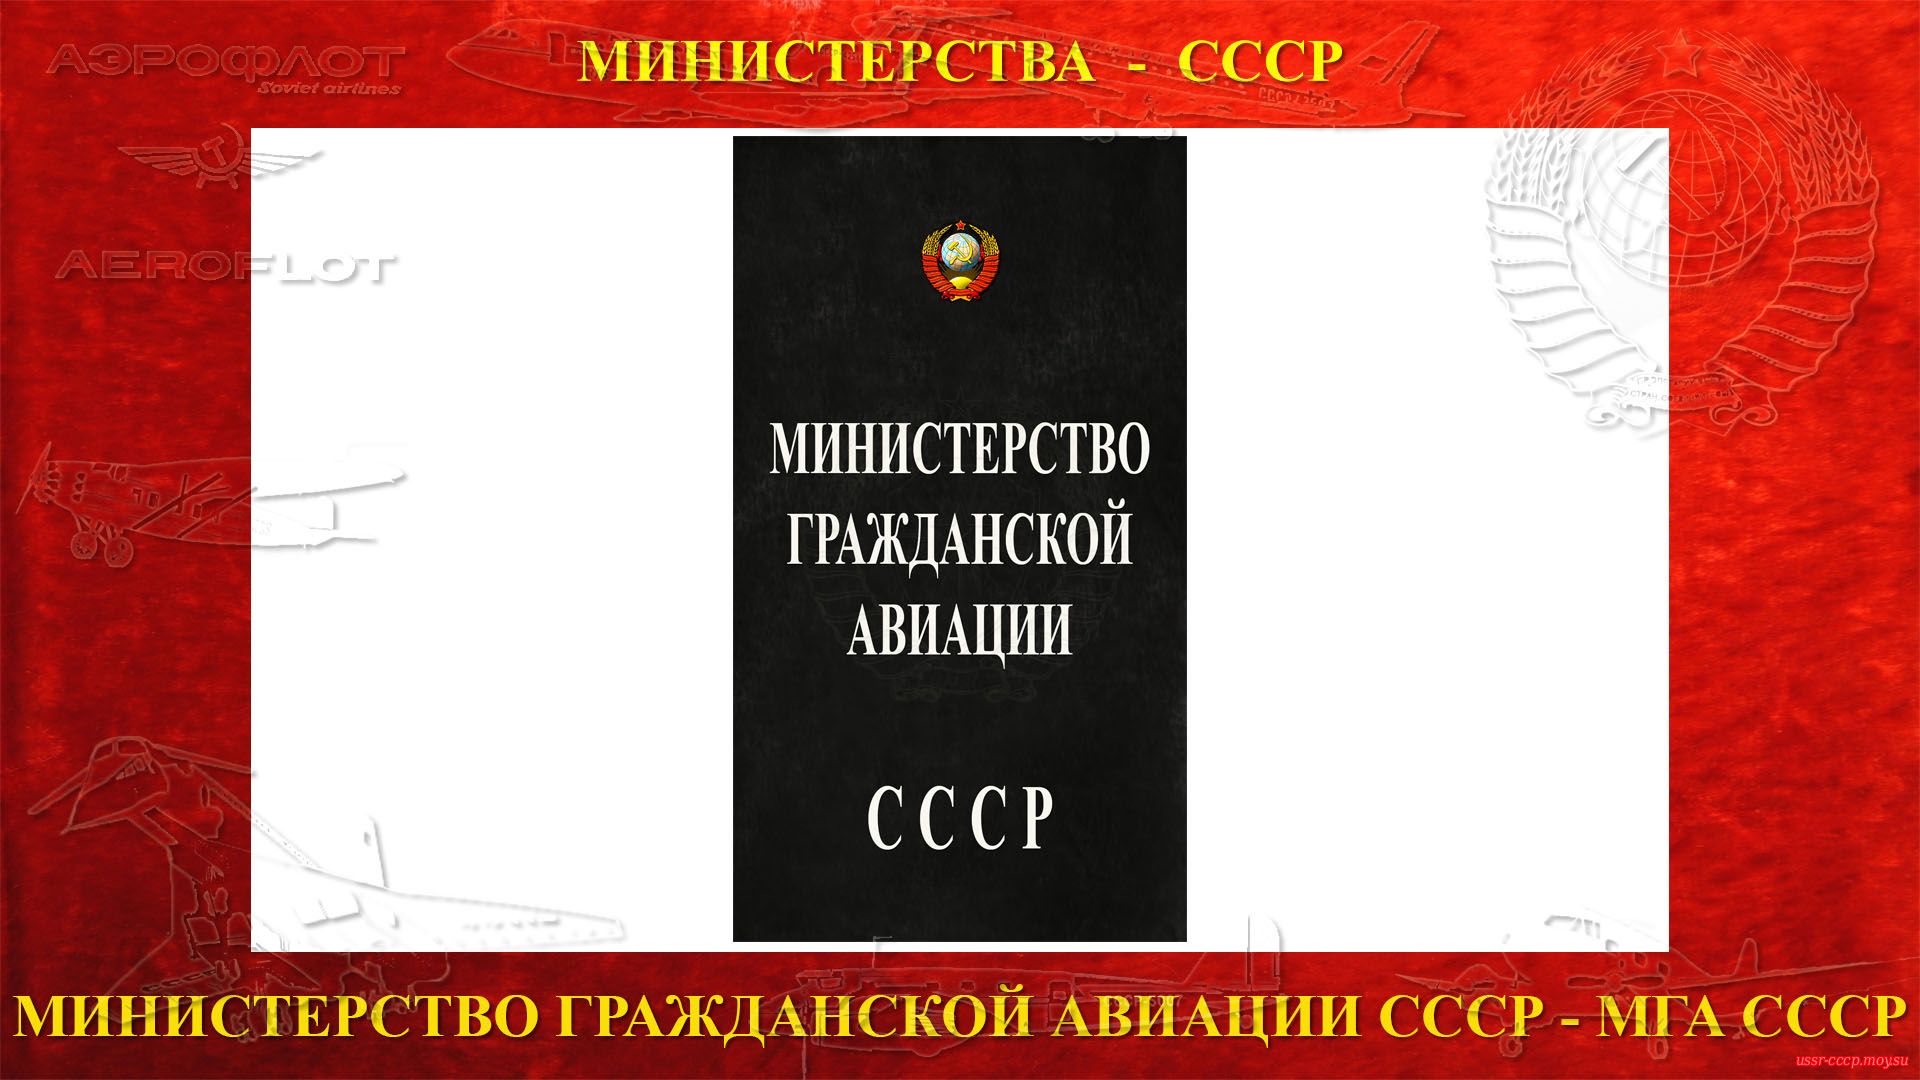 Министерство гражданской авиации СССР (повествование)